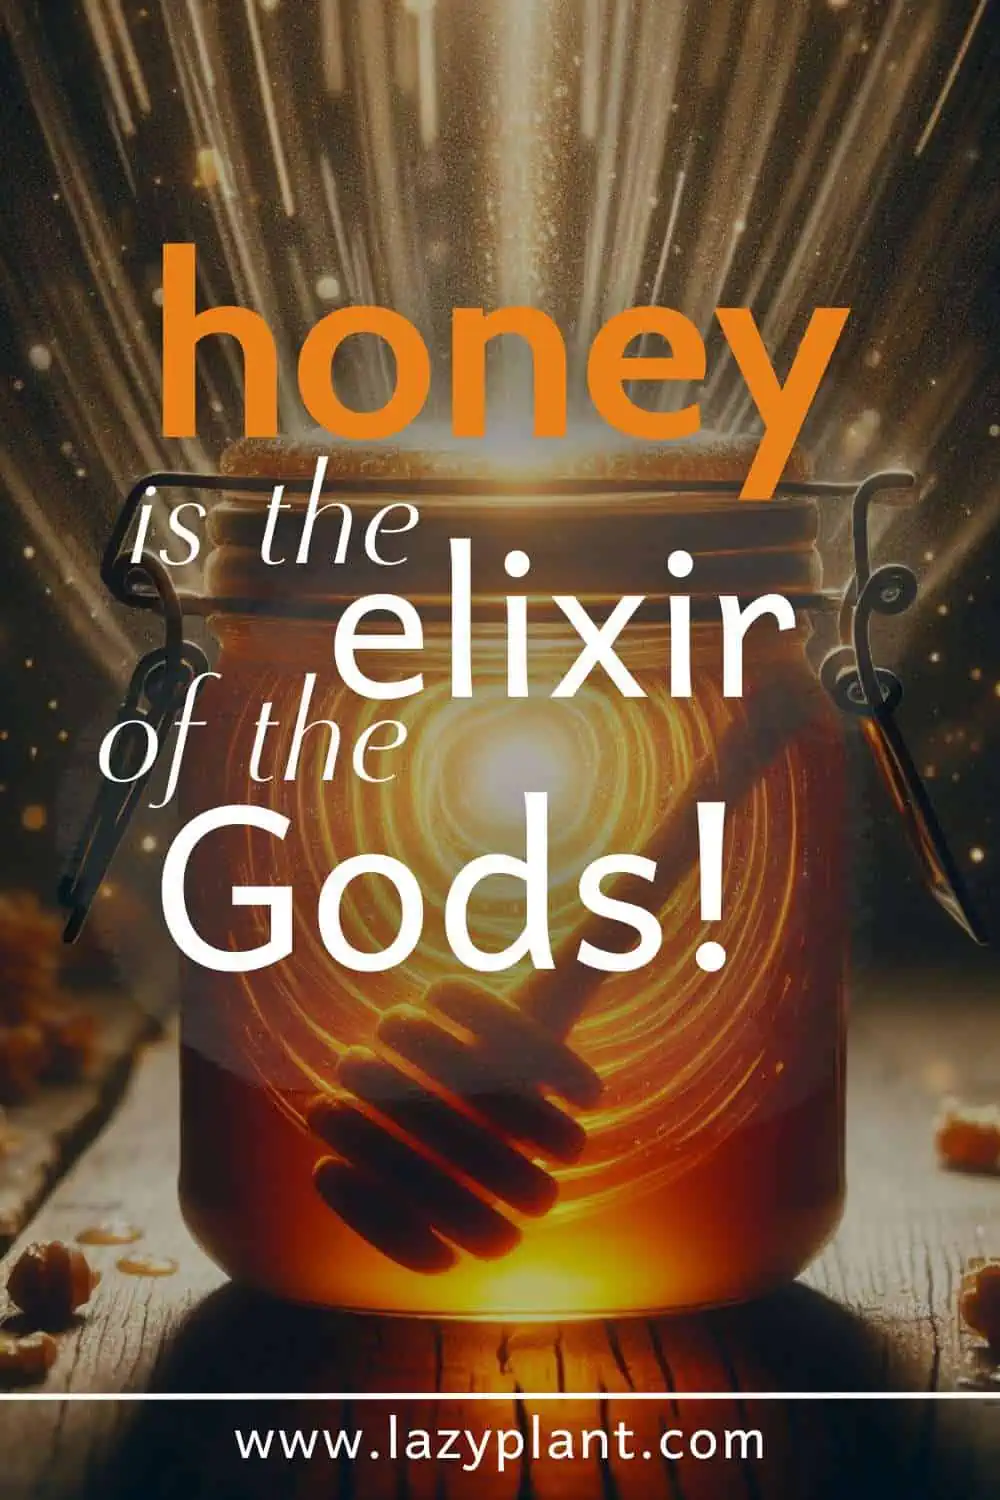 Honey is eaten in the Mediterranean region for centuries!